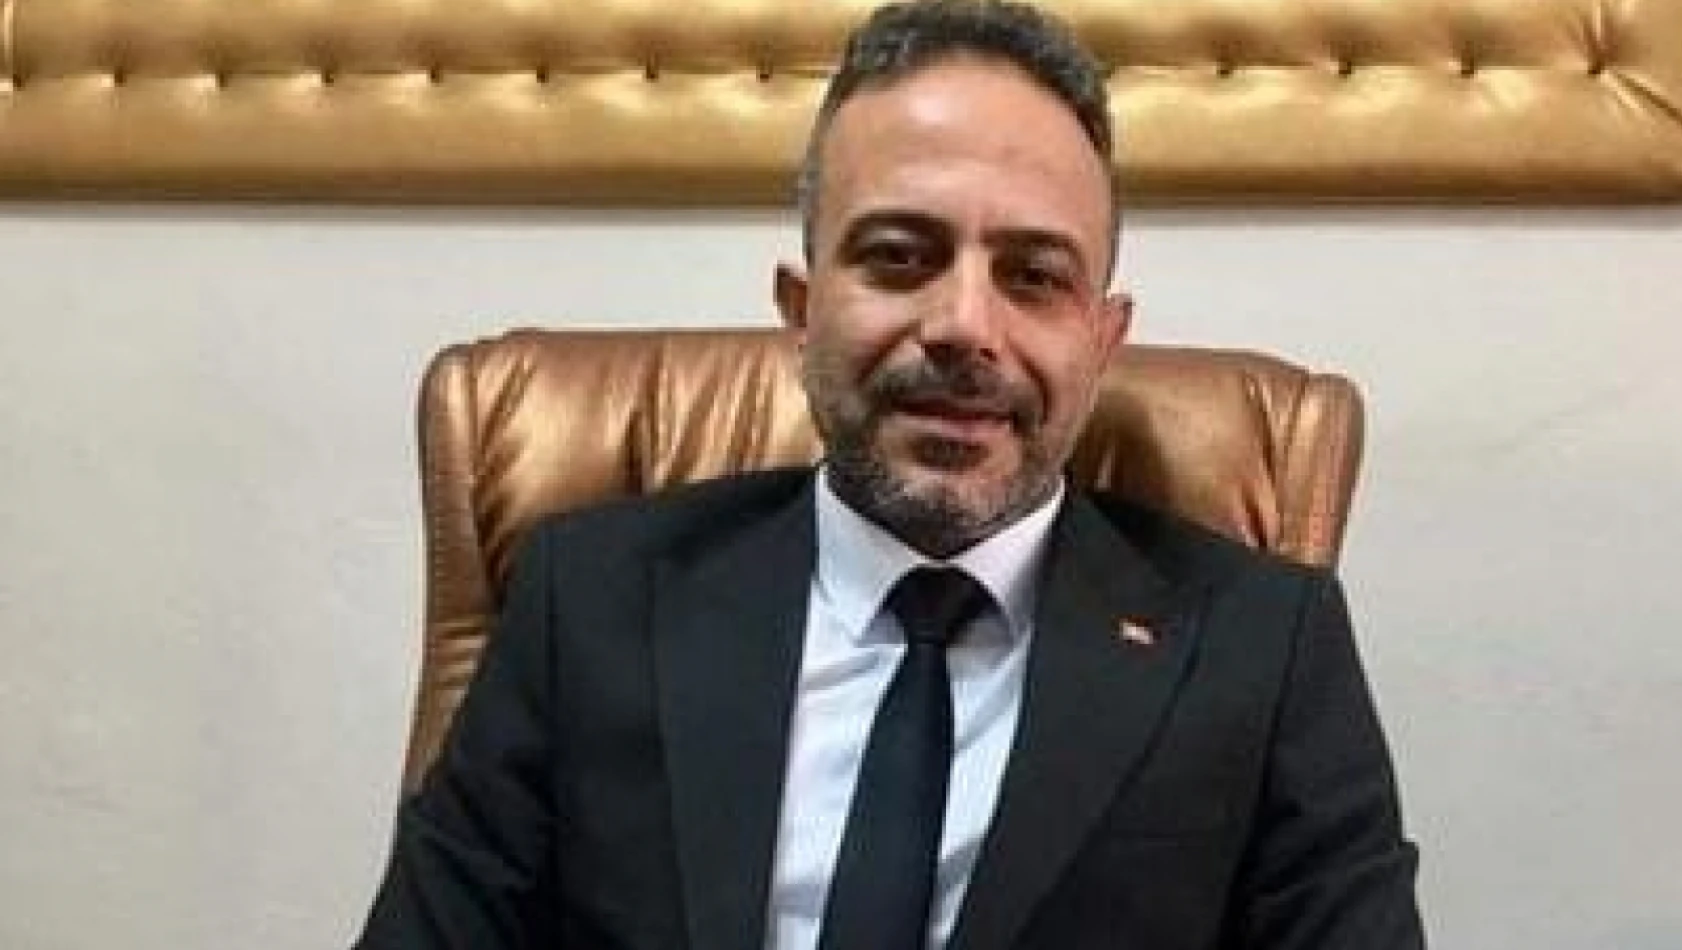 AK parti maden ilçe başkanı ramazan sekmen, görevinden istifa etti